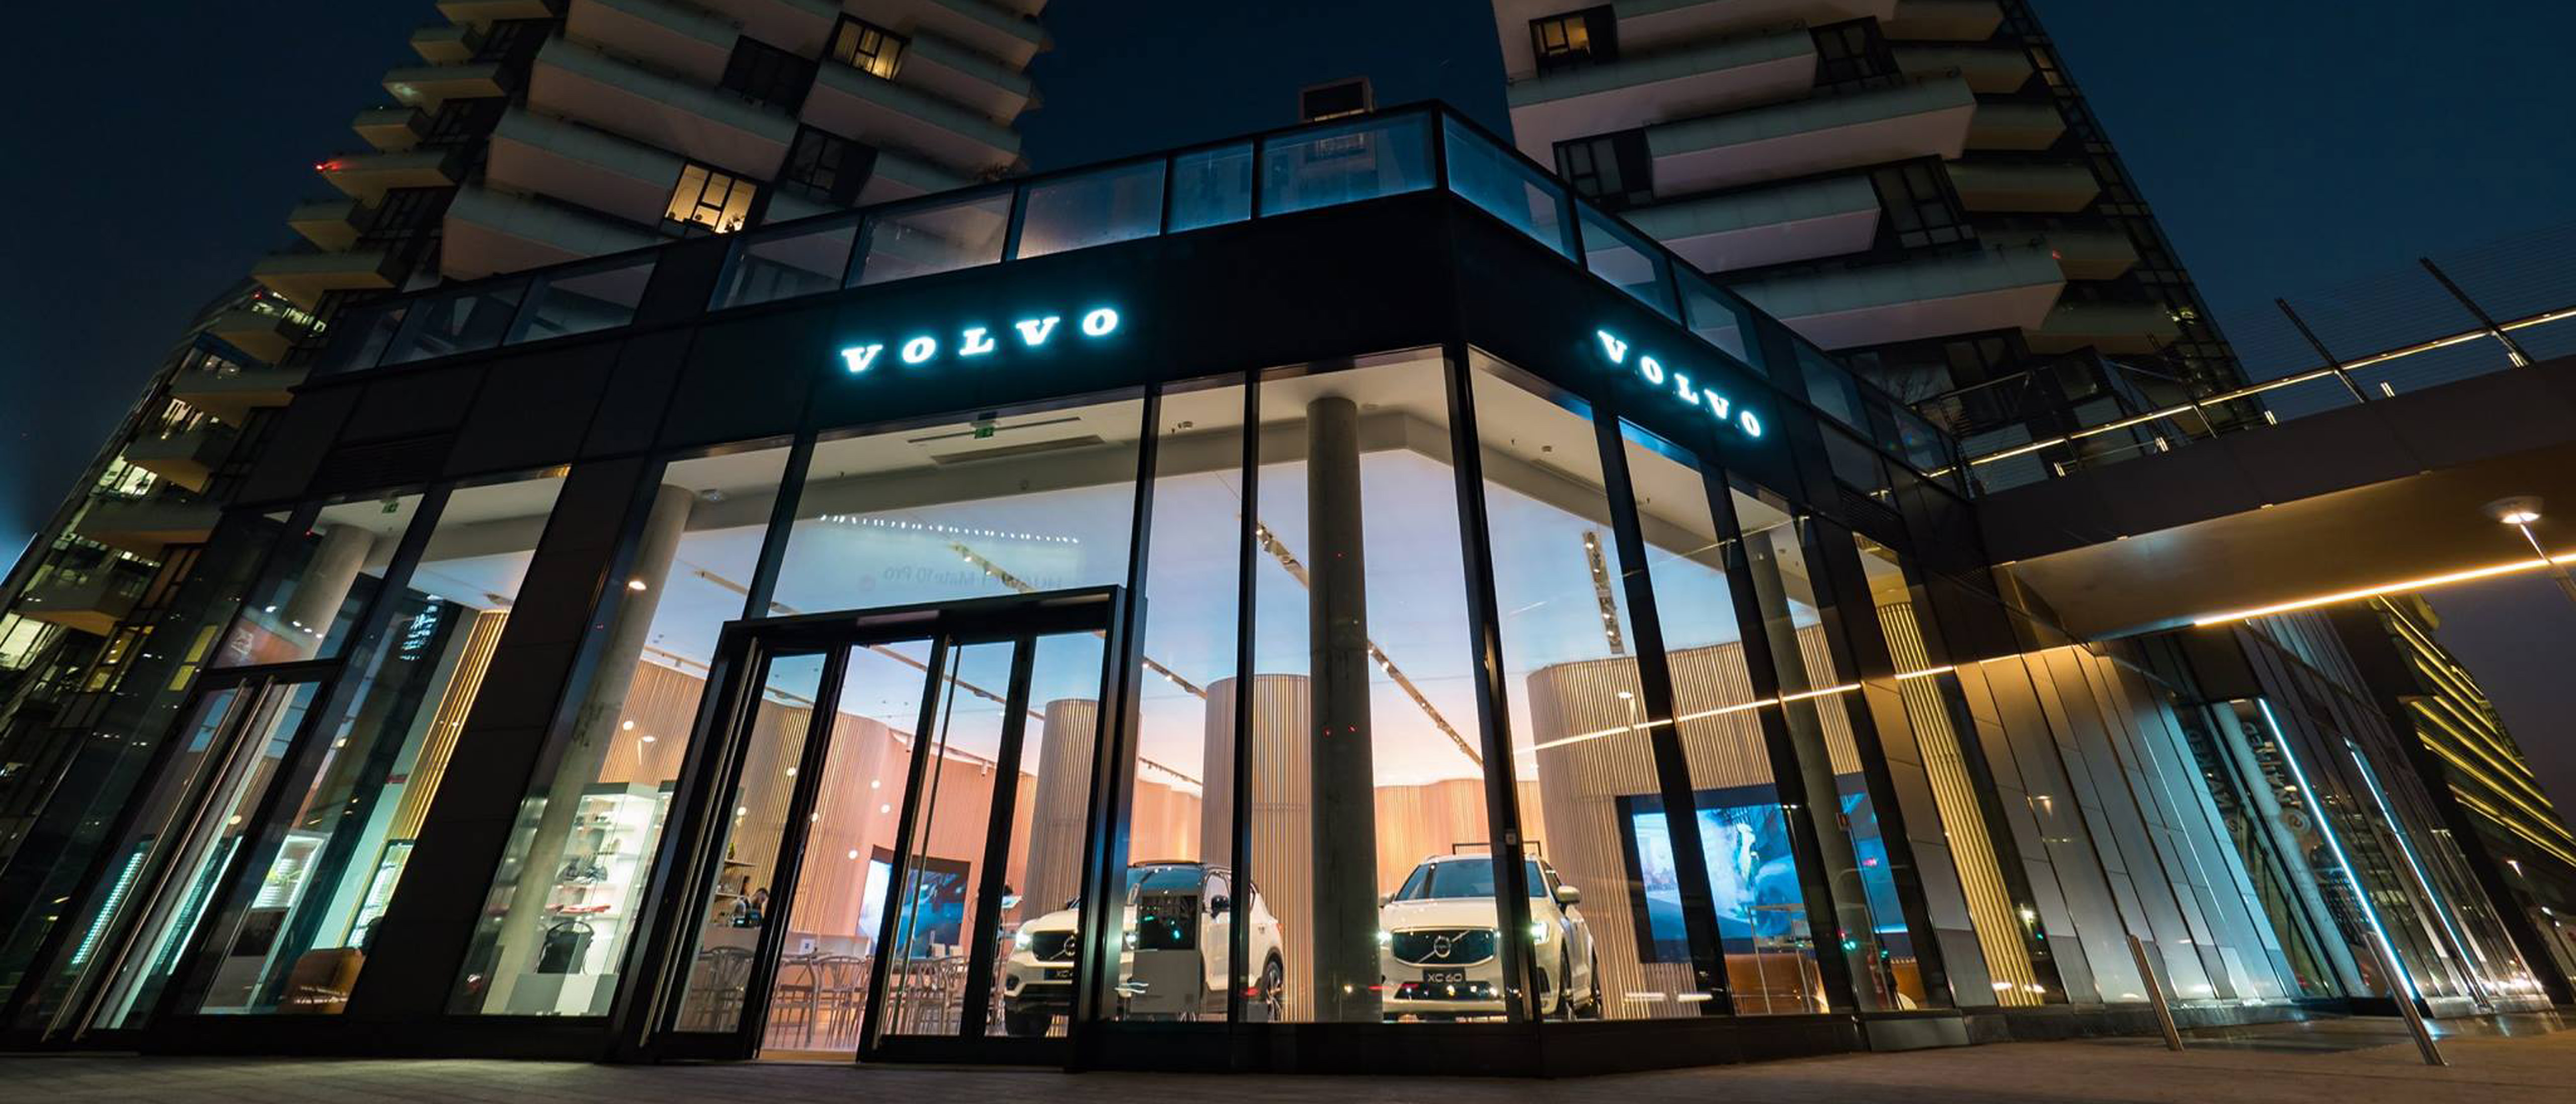 Volvo Studio Milano addobbato per Natale